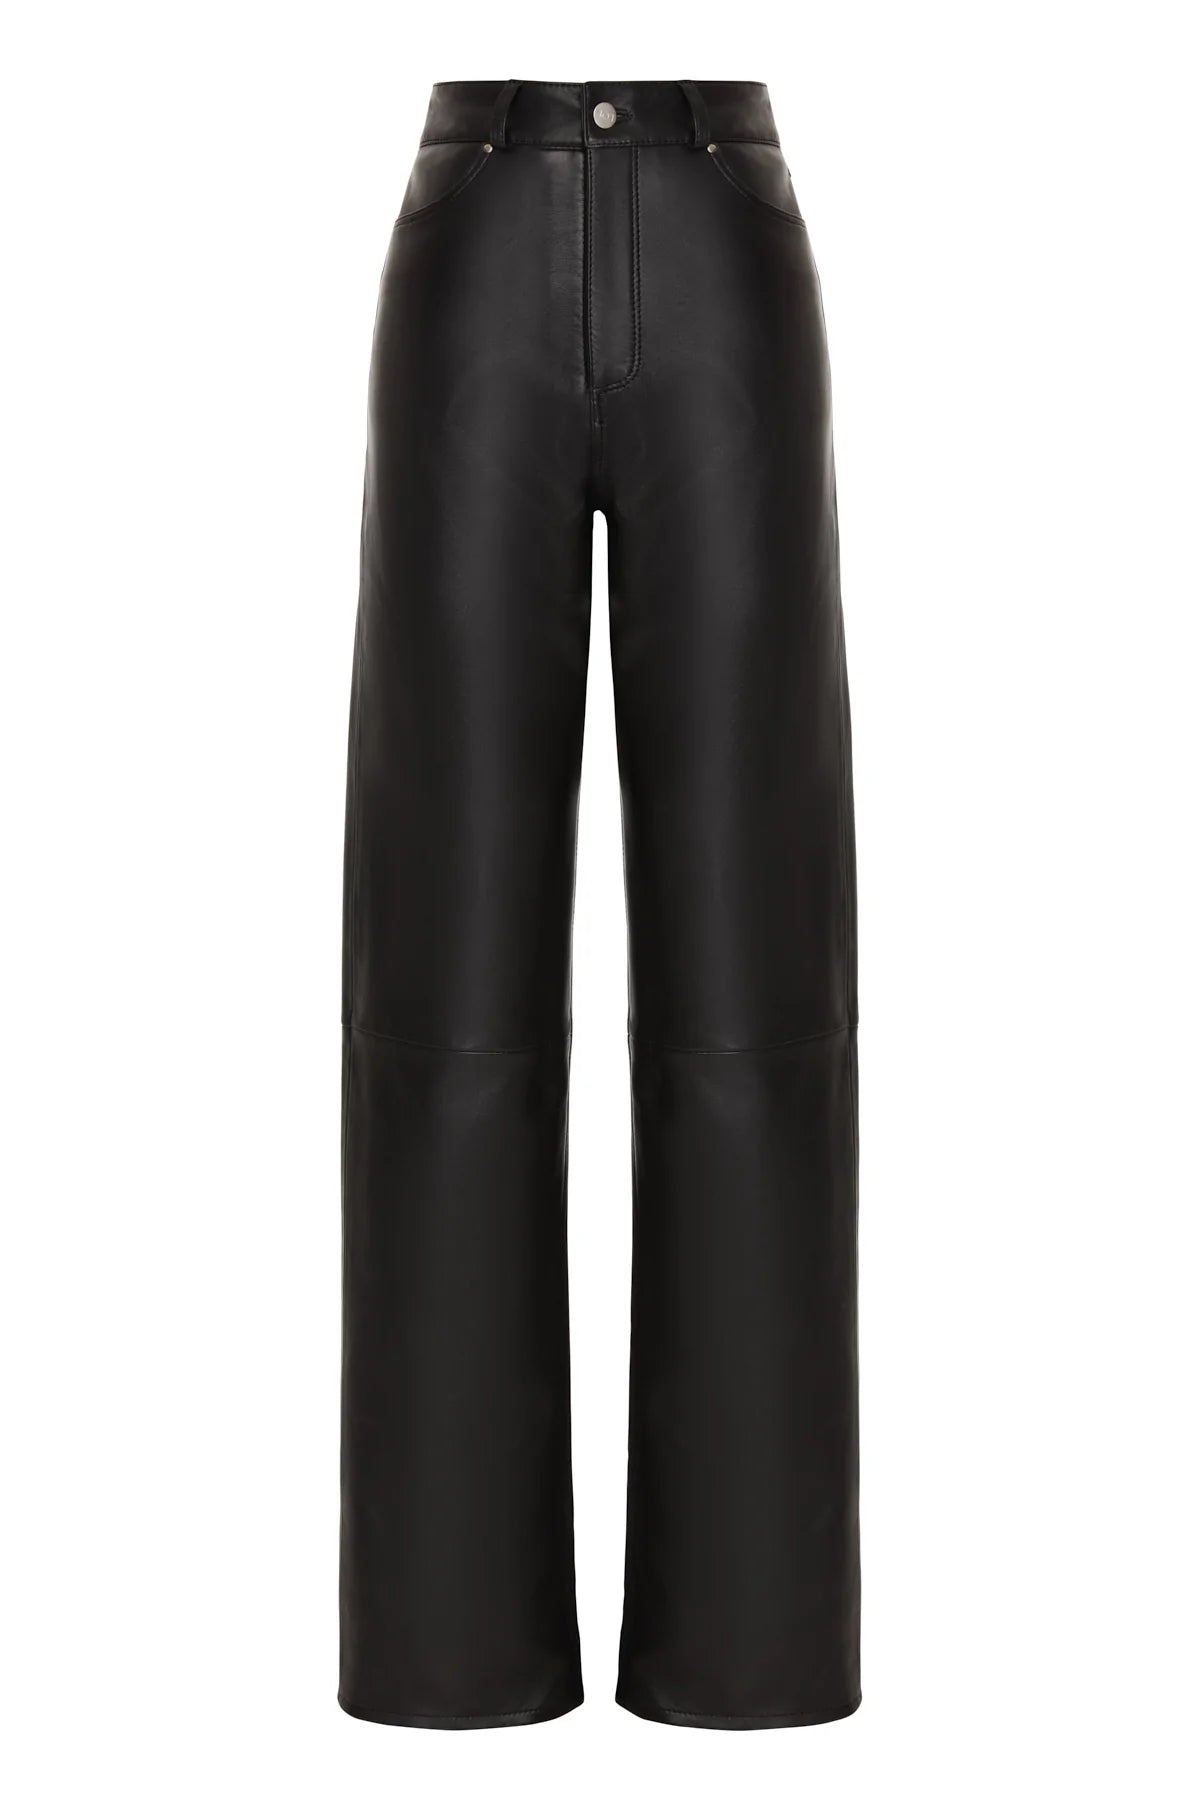 Astrid - Black Leather Pants – ARMADIO 55